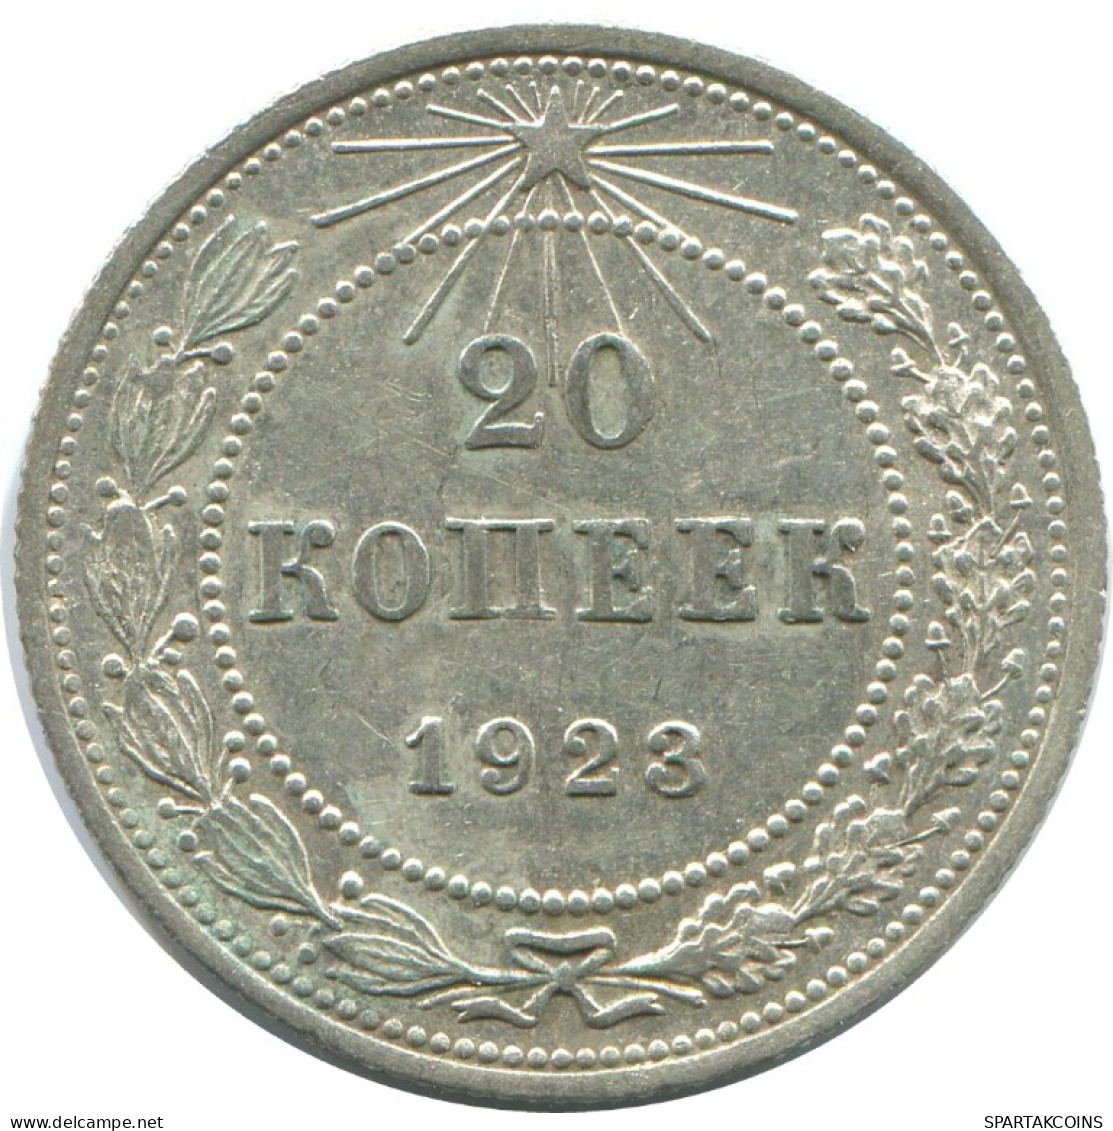 20 KOPEKS 1923 RUSSIA RSFSR SILVER Coin HIGH GRADE #AF445.4.U.A - Rusland